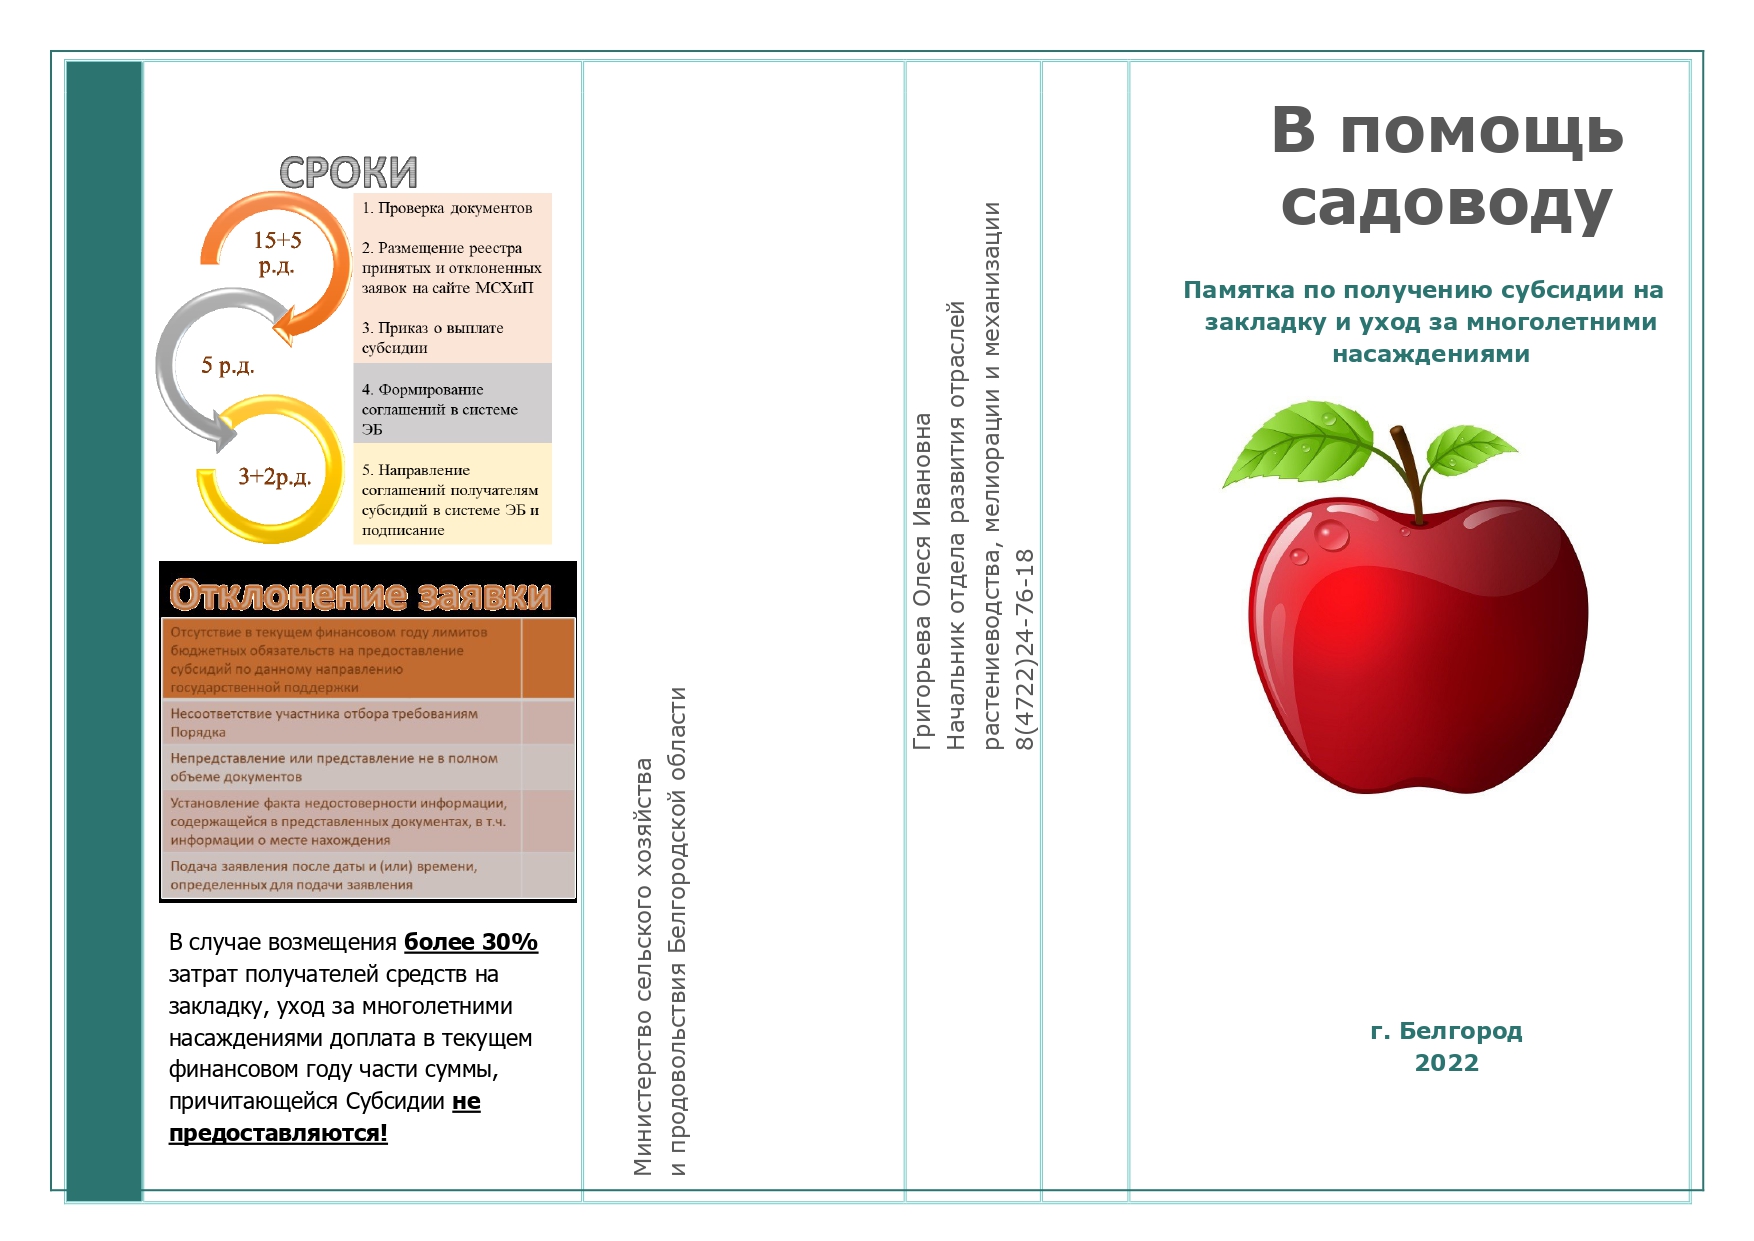 Памятка о получении субсидии на компенсацию части затрат по агротехнологическим мероприятиям в отрасли садоводства на территории Белгородской области